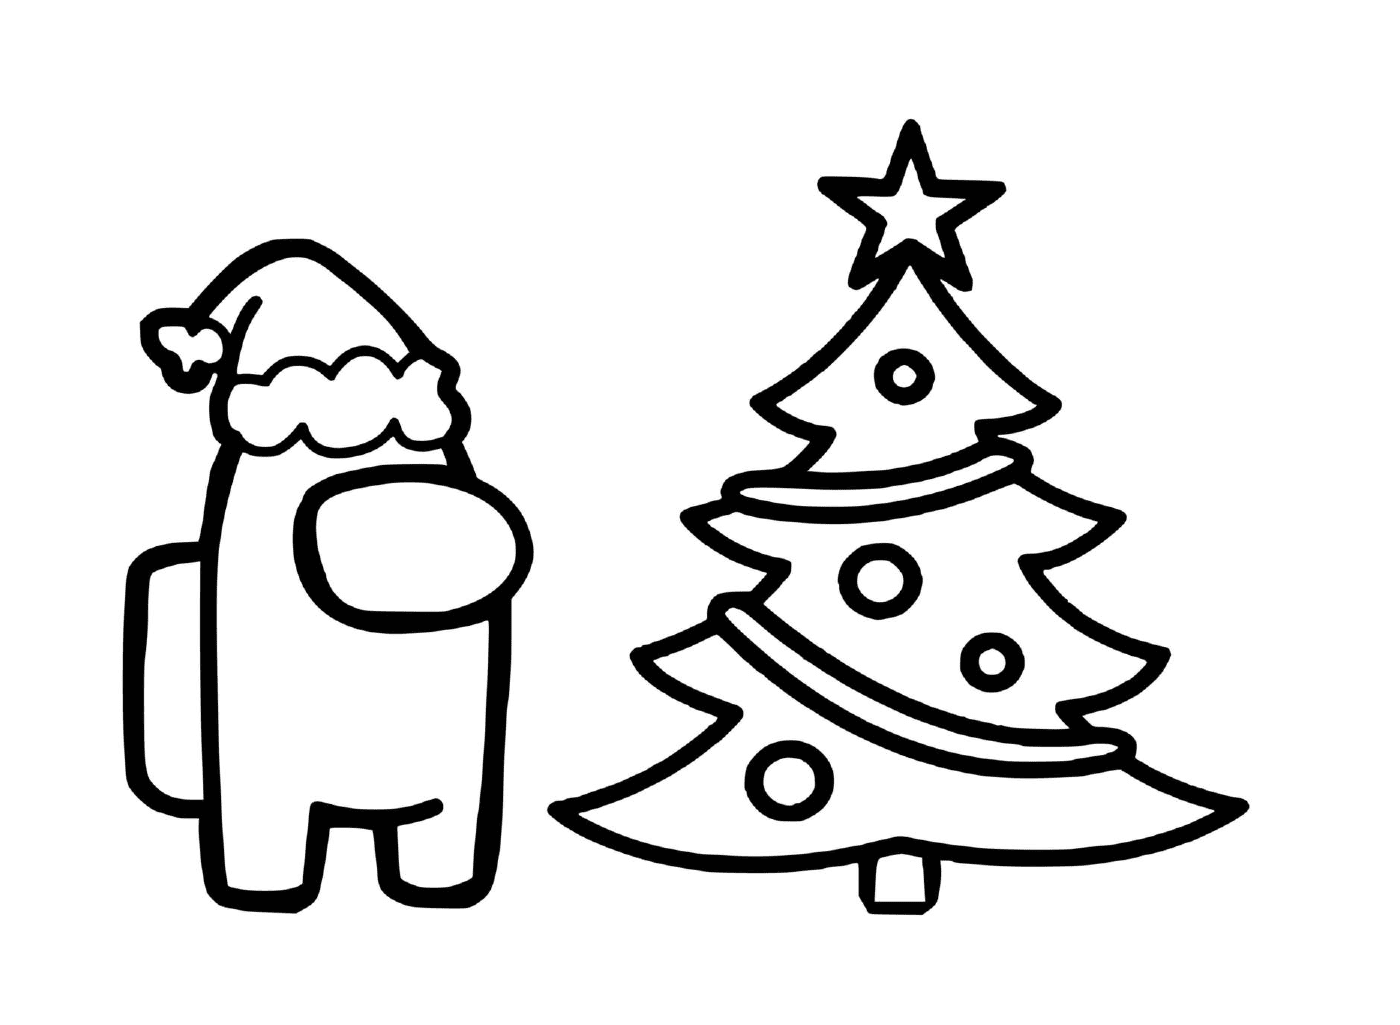  Gnom und Weihnachtsbaum 